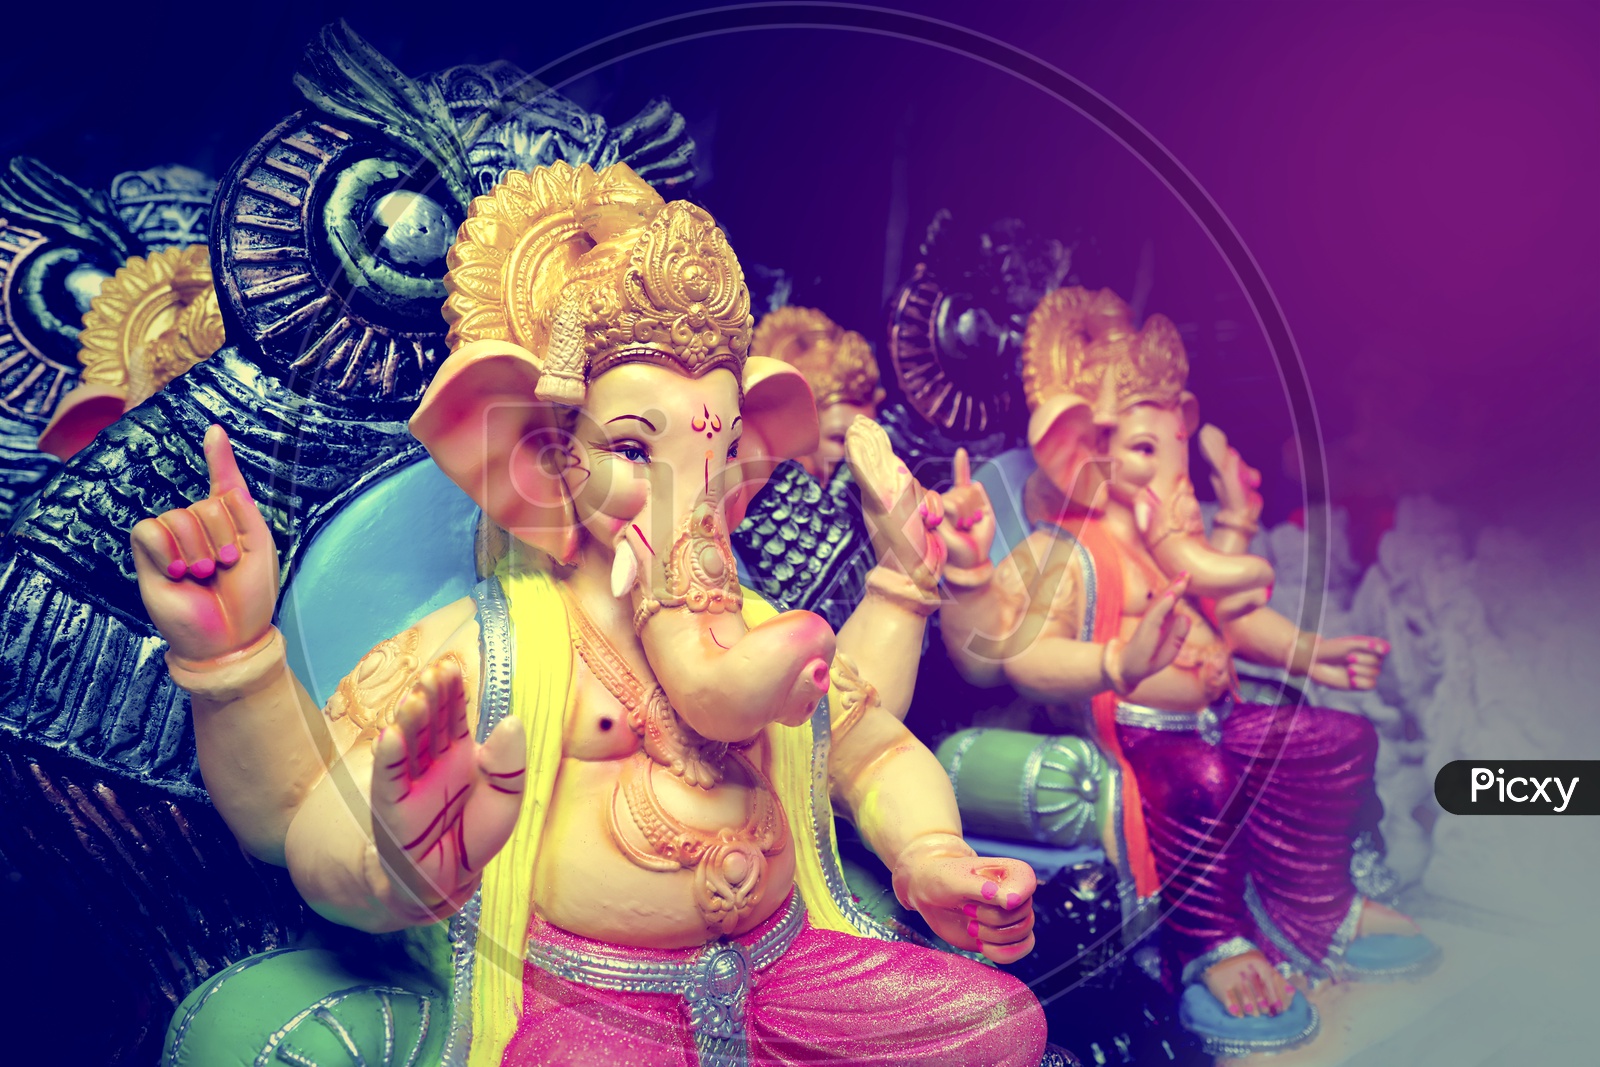 Lord Ganesh Idol / Ganesha Idol's placed in a sequence